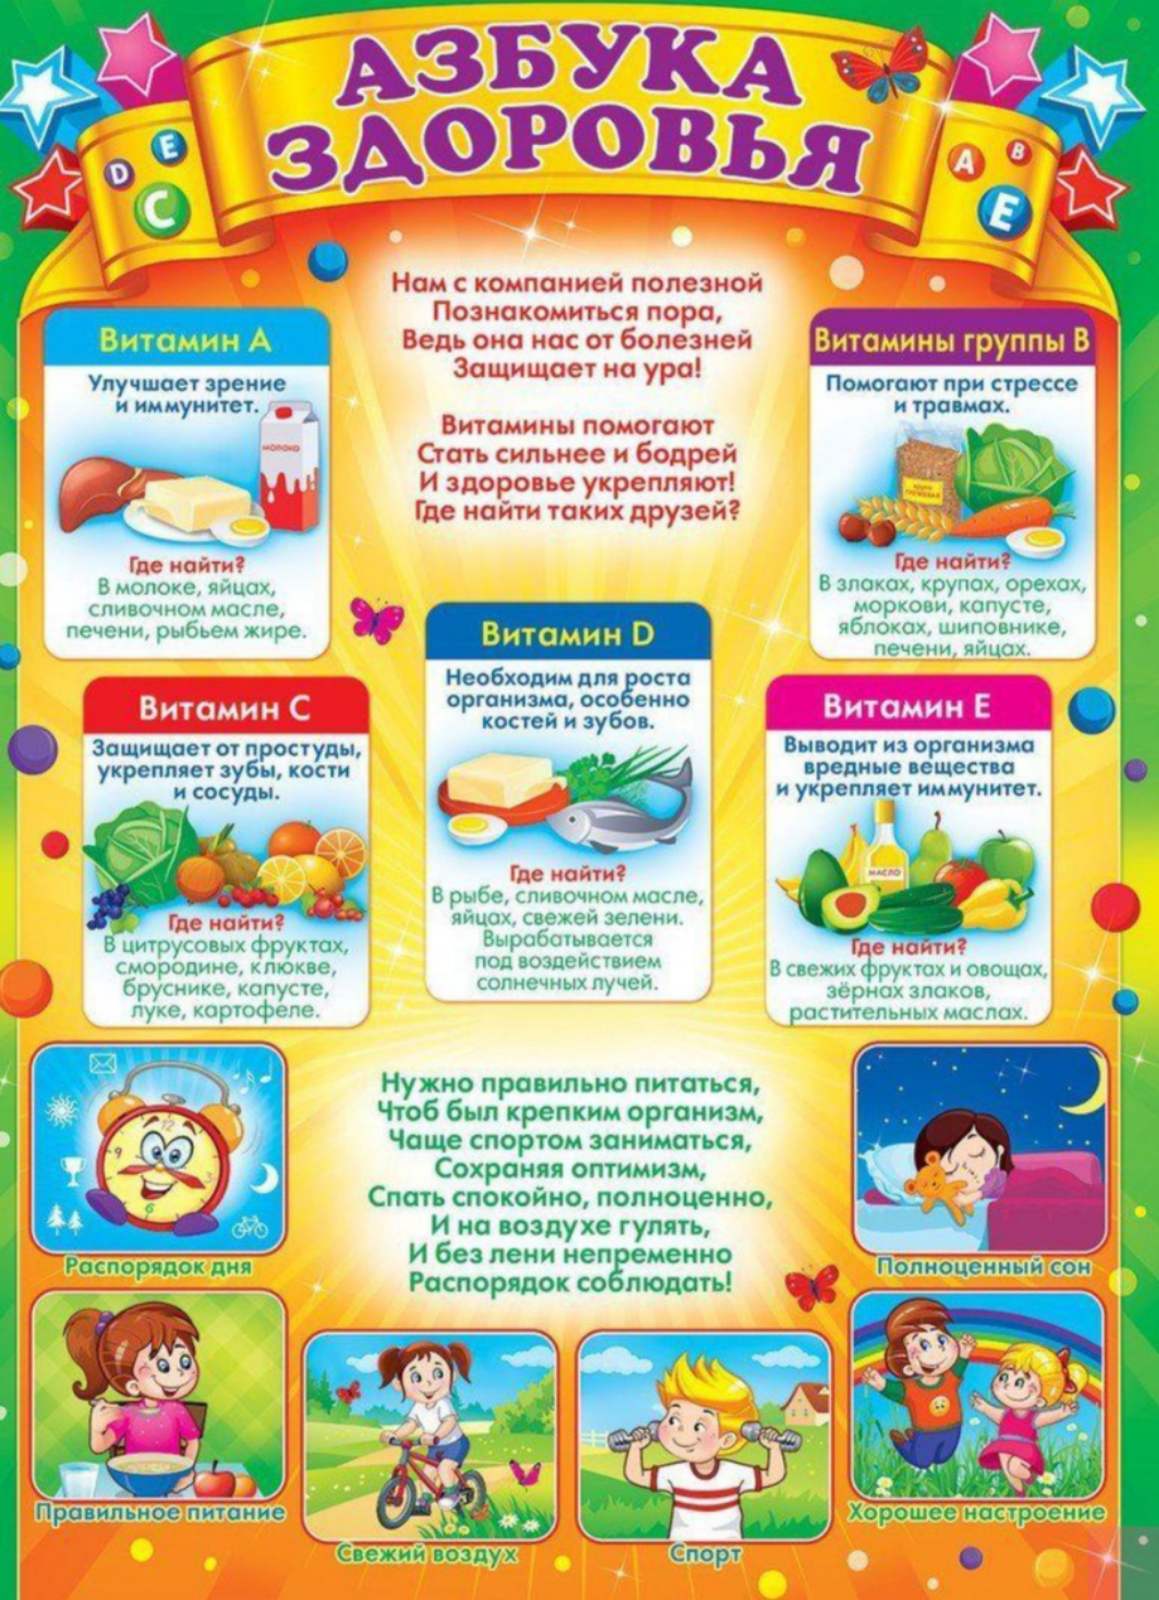 Памятка здоровья для детей. Азбука здоровья. Уголок здоровья в детском саду. Материал для уголка здоровья. Плакаты для детского сада.